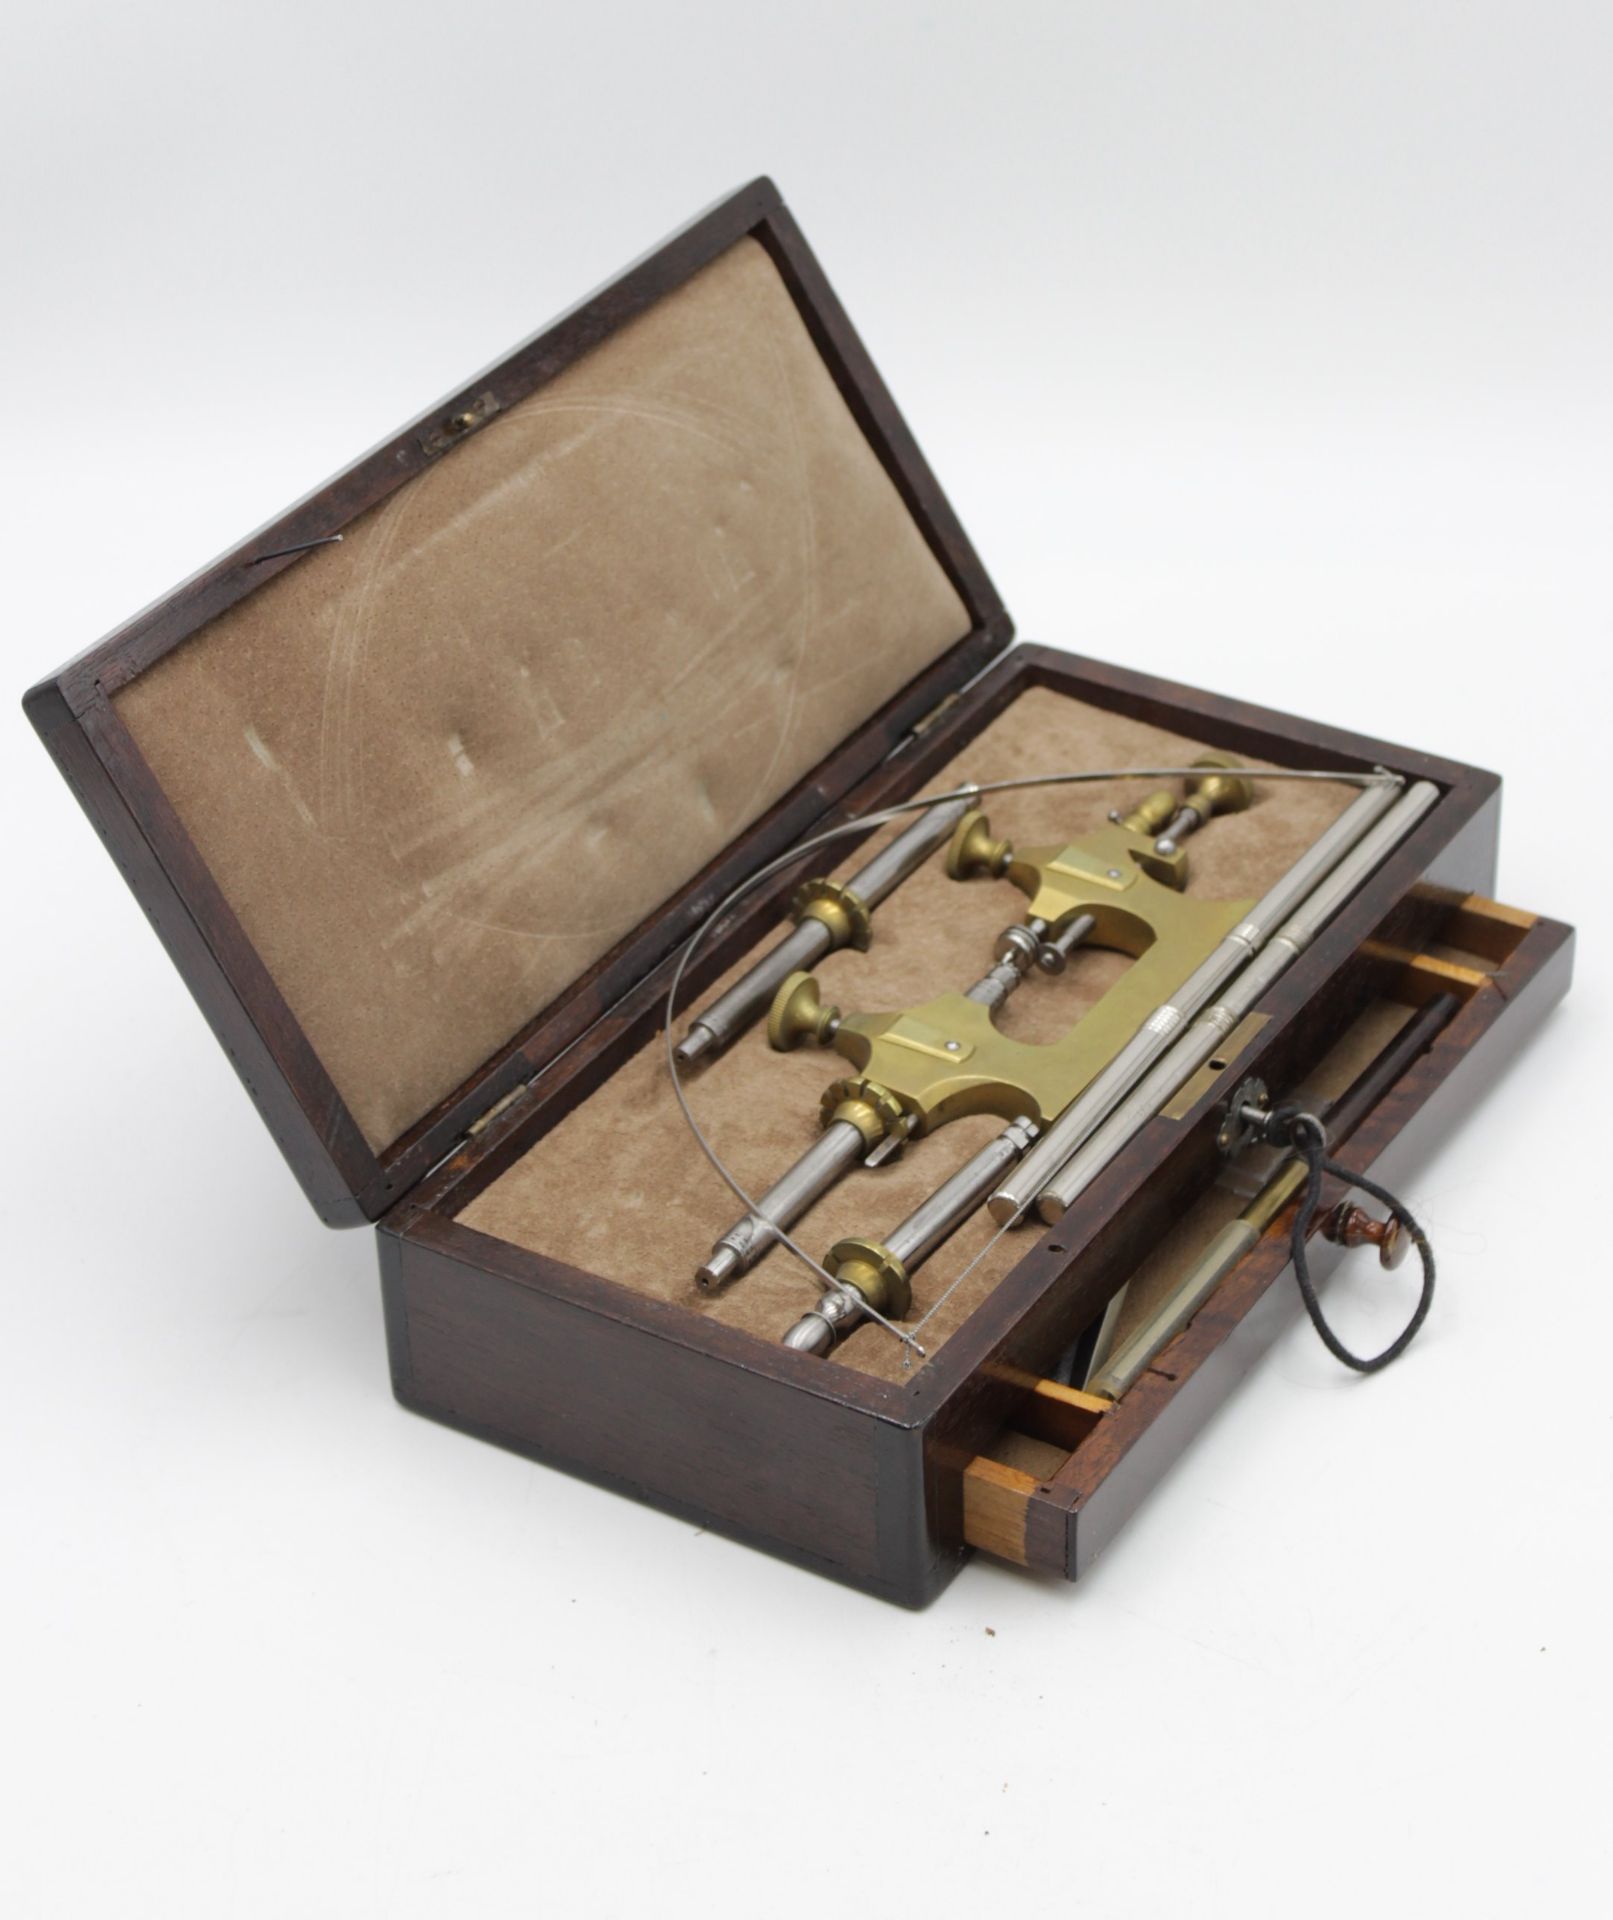 Zapfenrollierstuhl, Uhrmacherwerkzeug, Anf. 20. Jhd., orig. Kasten, H-6,5cmn B-28,2cm T-13,3cm. - Bild 5 aus 5